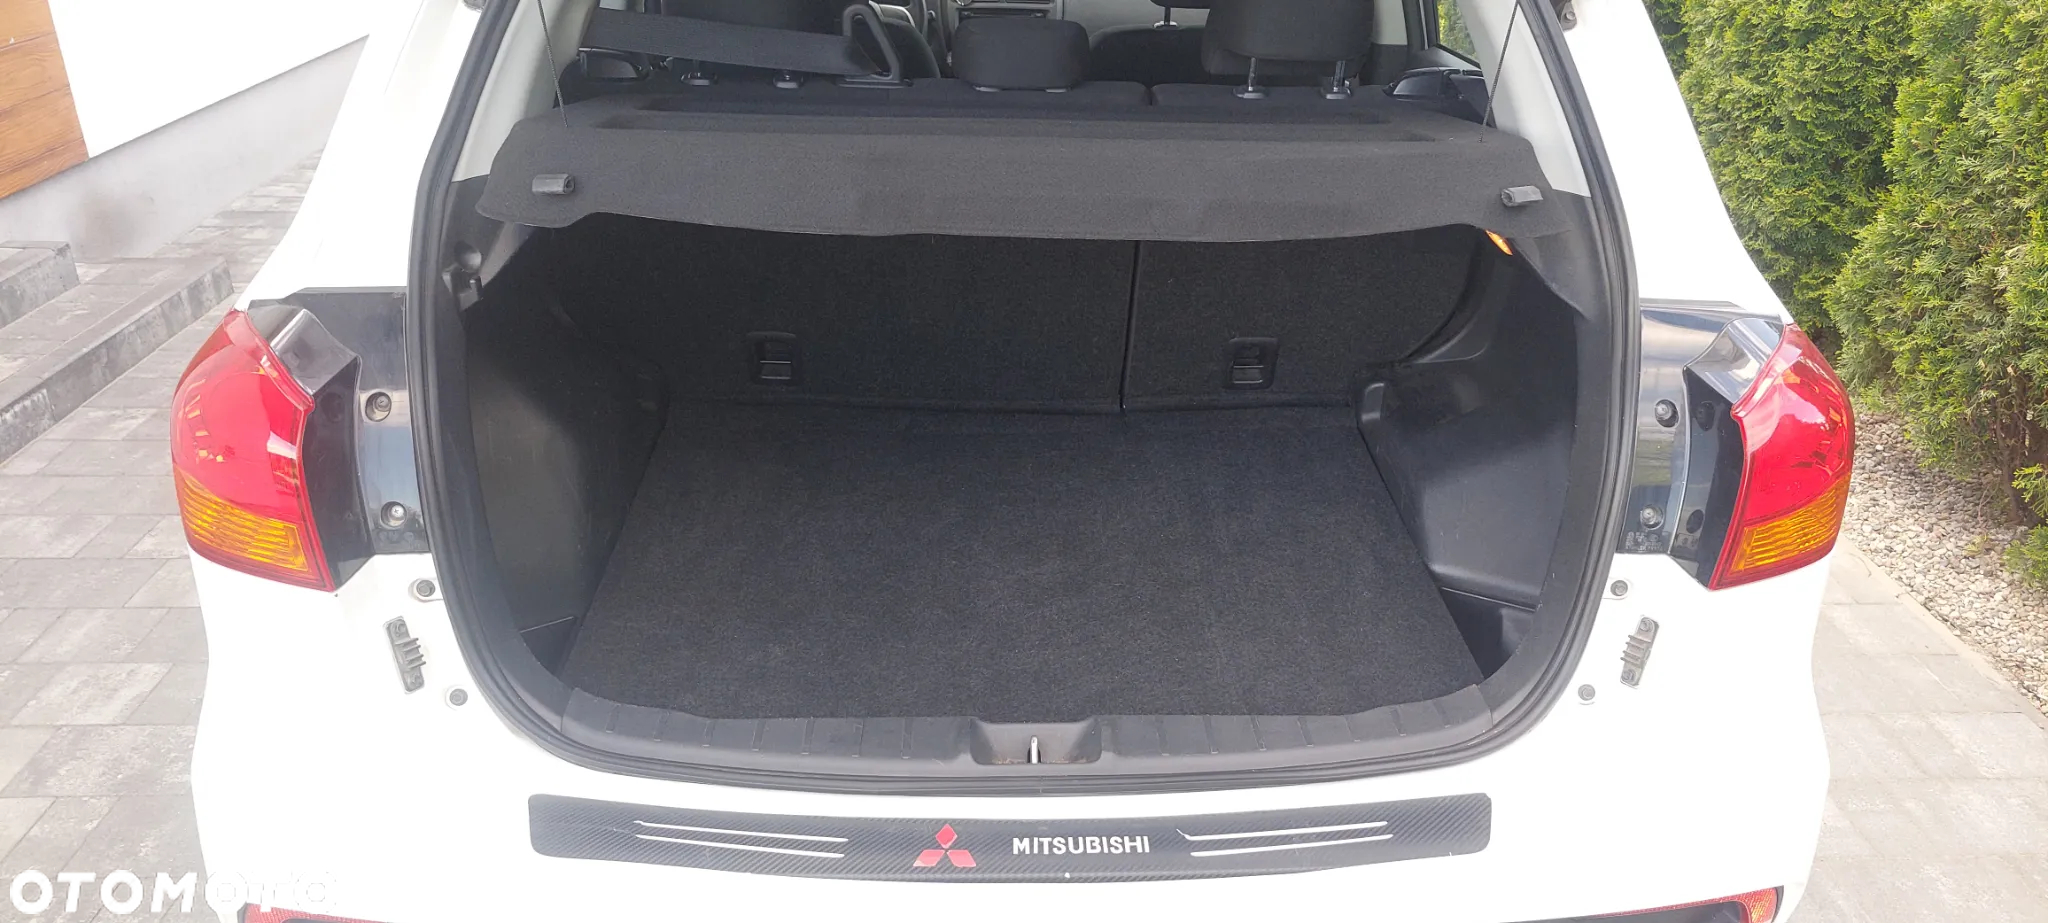 Mitsubishi ASX 1.6 ClearTec 2WD Basis - 15